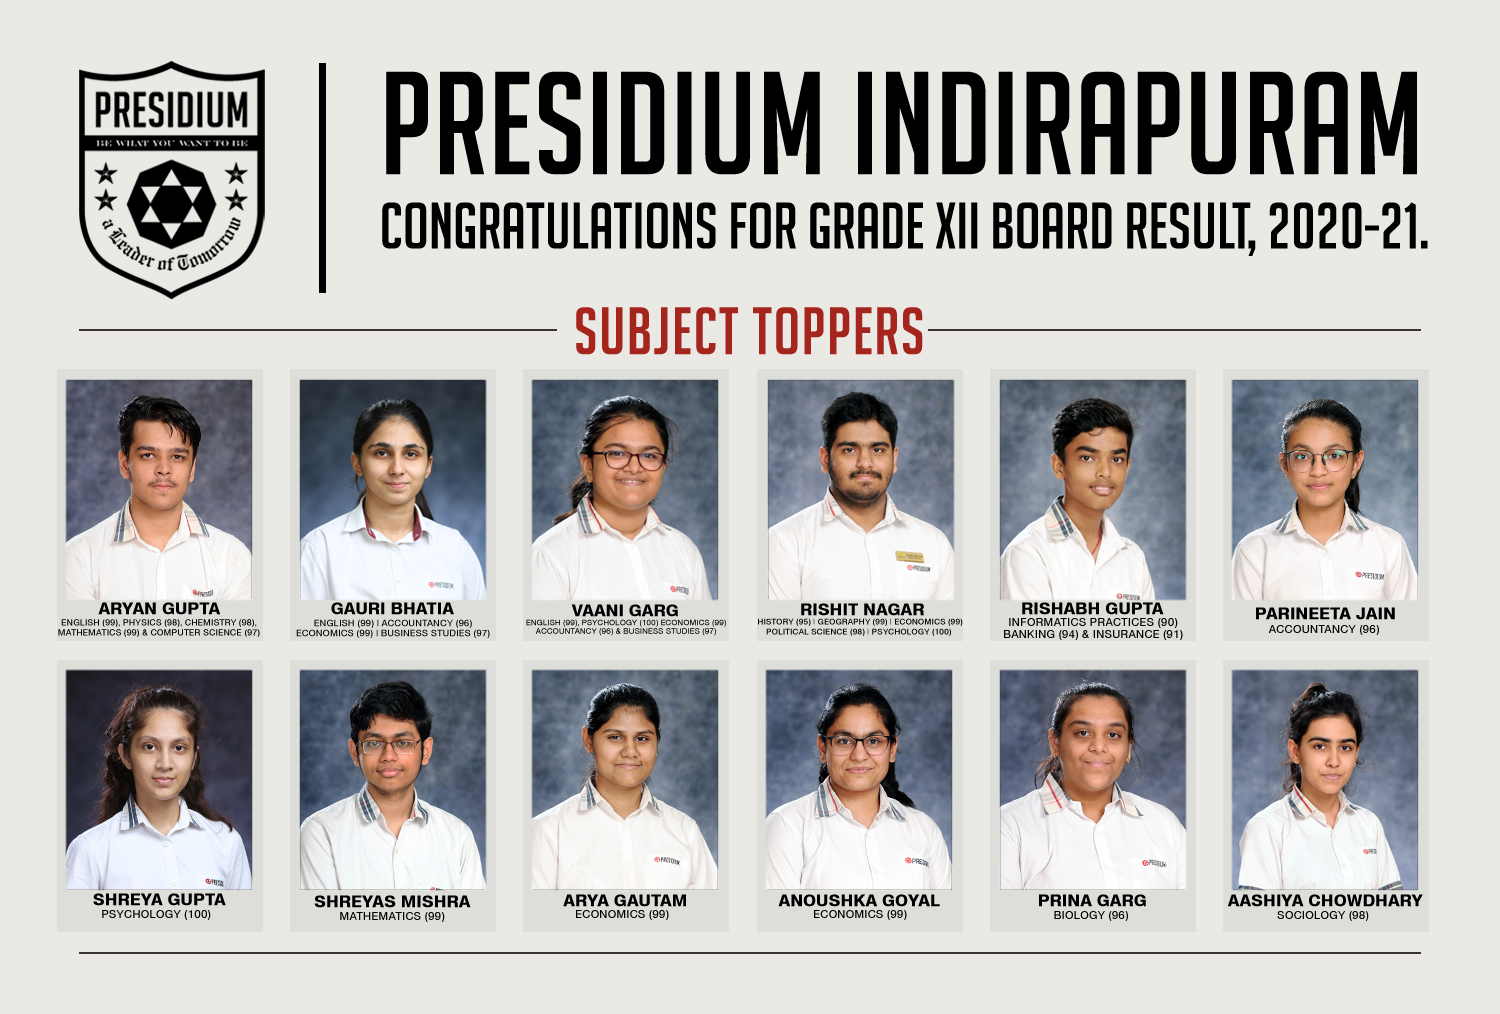 Presidium Indirapuram, CONGRATULATIONS STUDENTS FOR BRILLIANT 12TH BOARD RESULTS! 